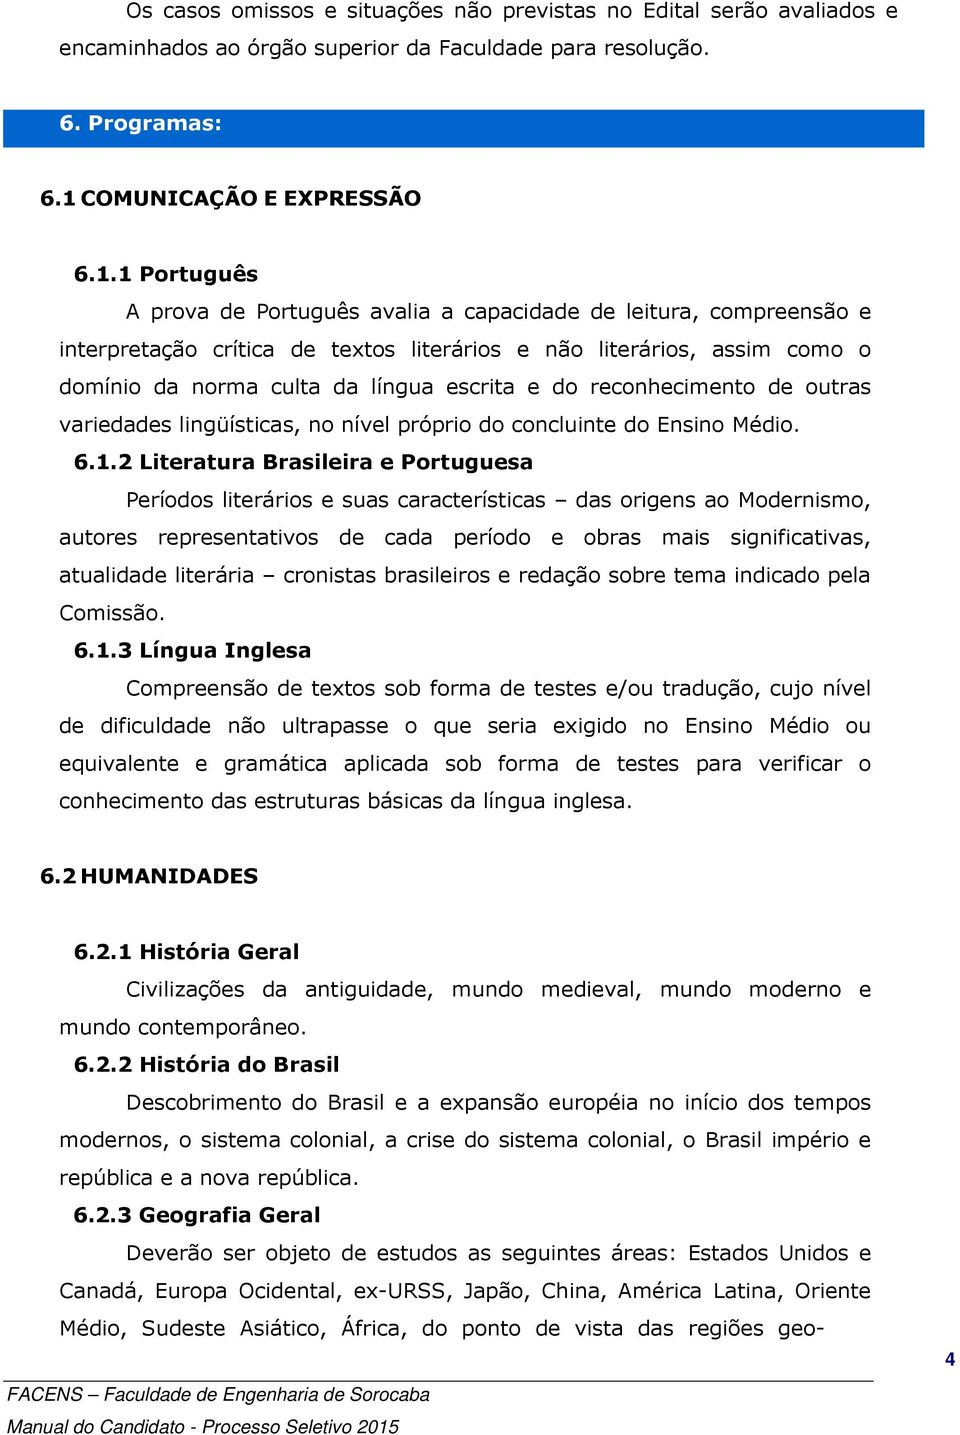 1 Português A prova de Português avalia a capacidade de leitura, compreensão e interpretação crítica de textos literários e não literários, assim como o domínio da norma culta da língua escrita e do